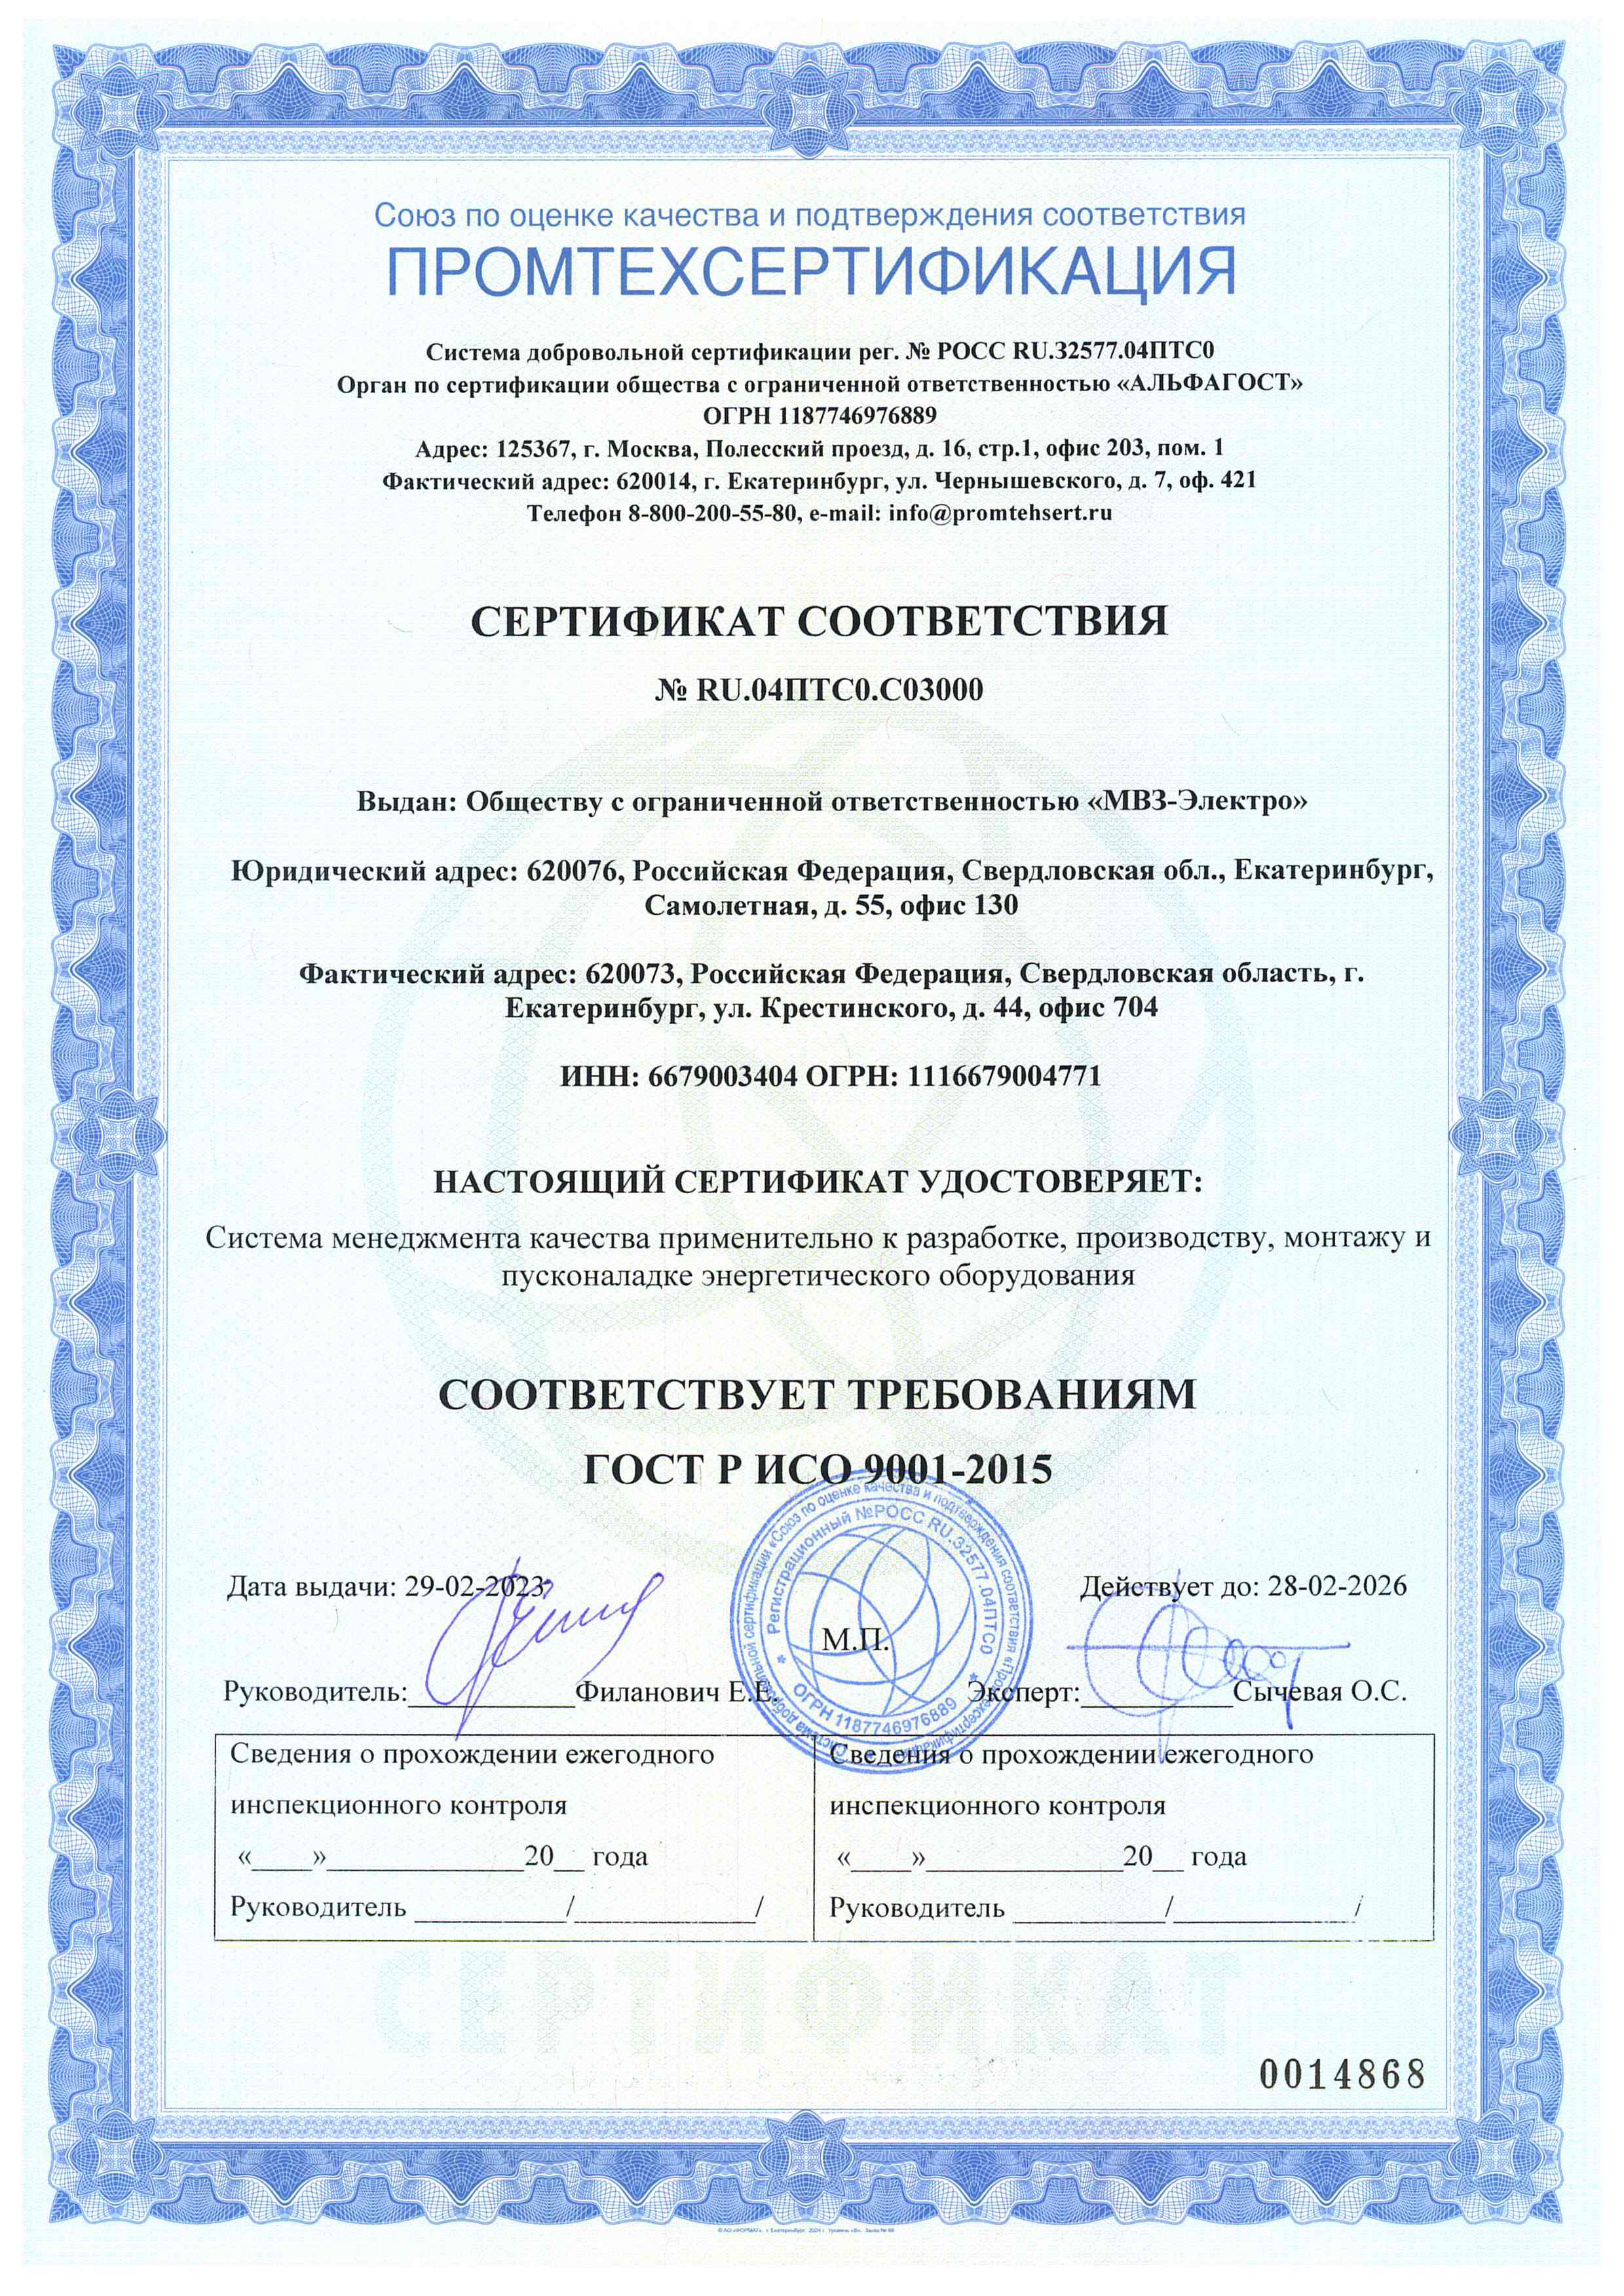 Сертификат МВЗ Электро